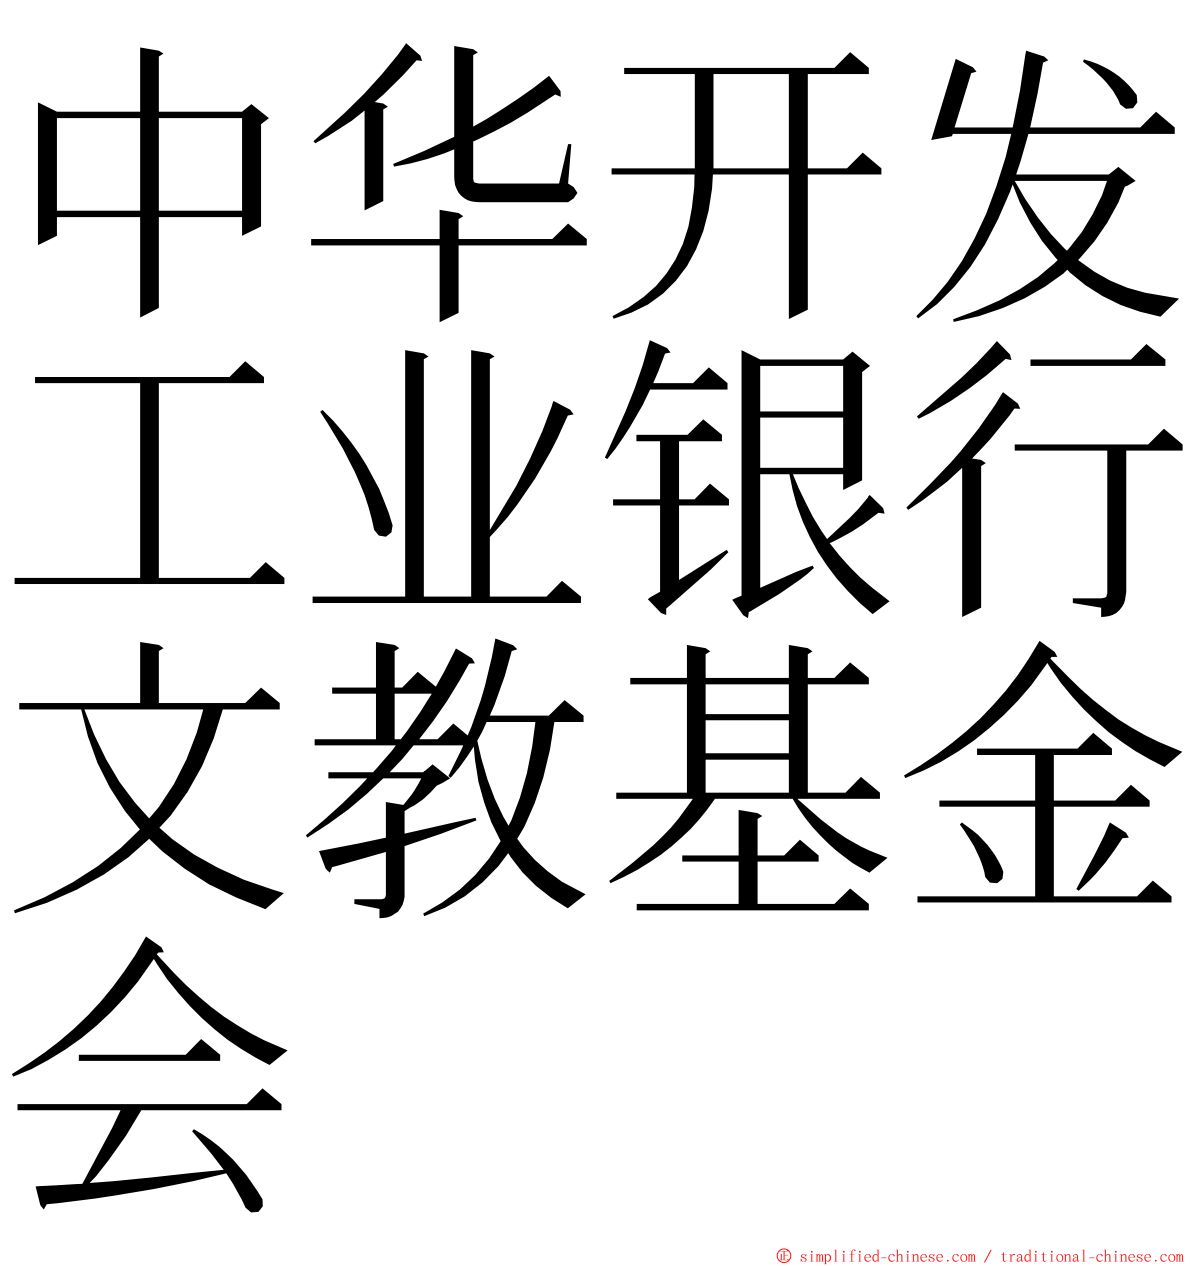 中华开发工业银行文教基金会 ming font